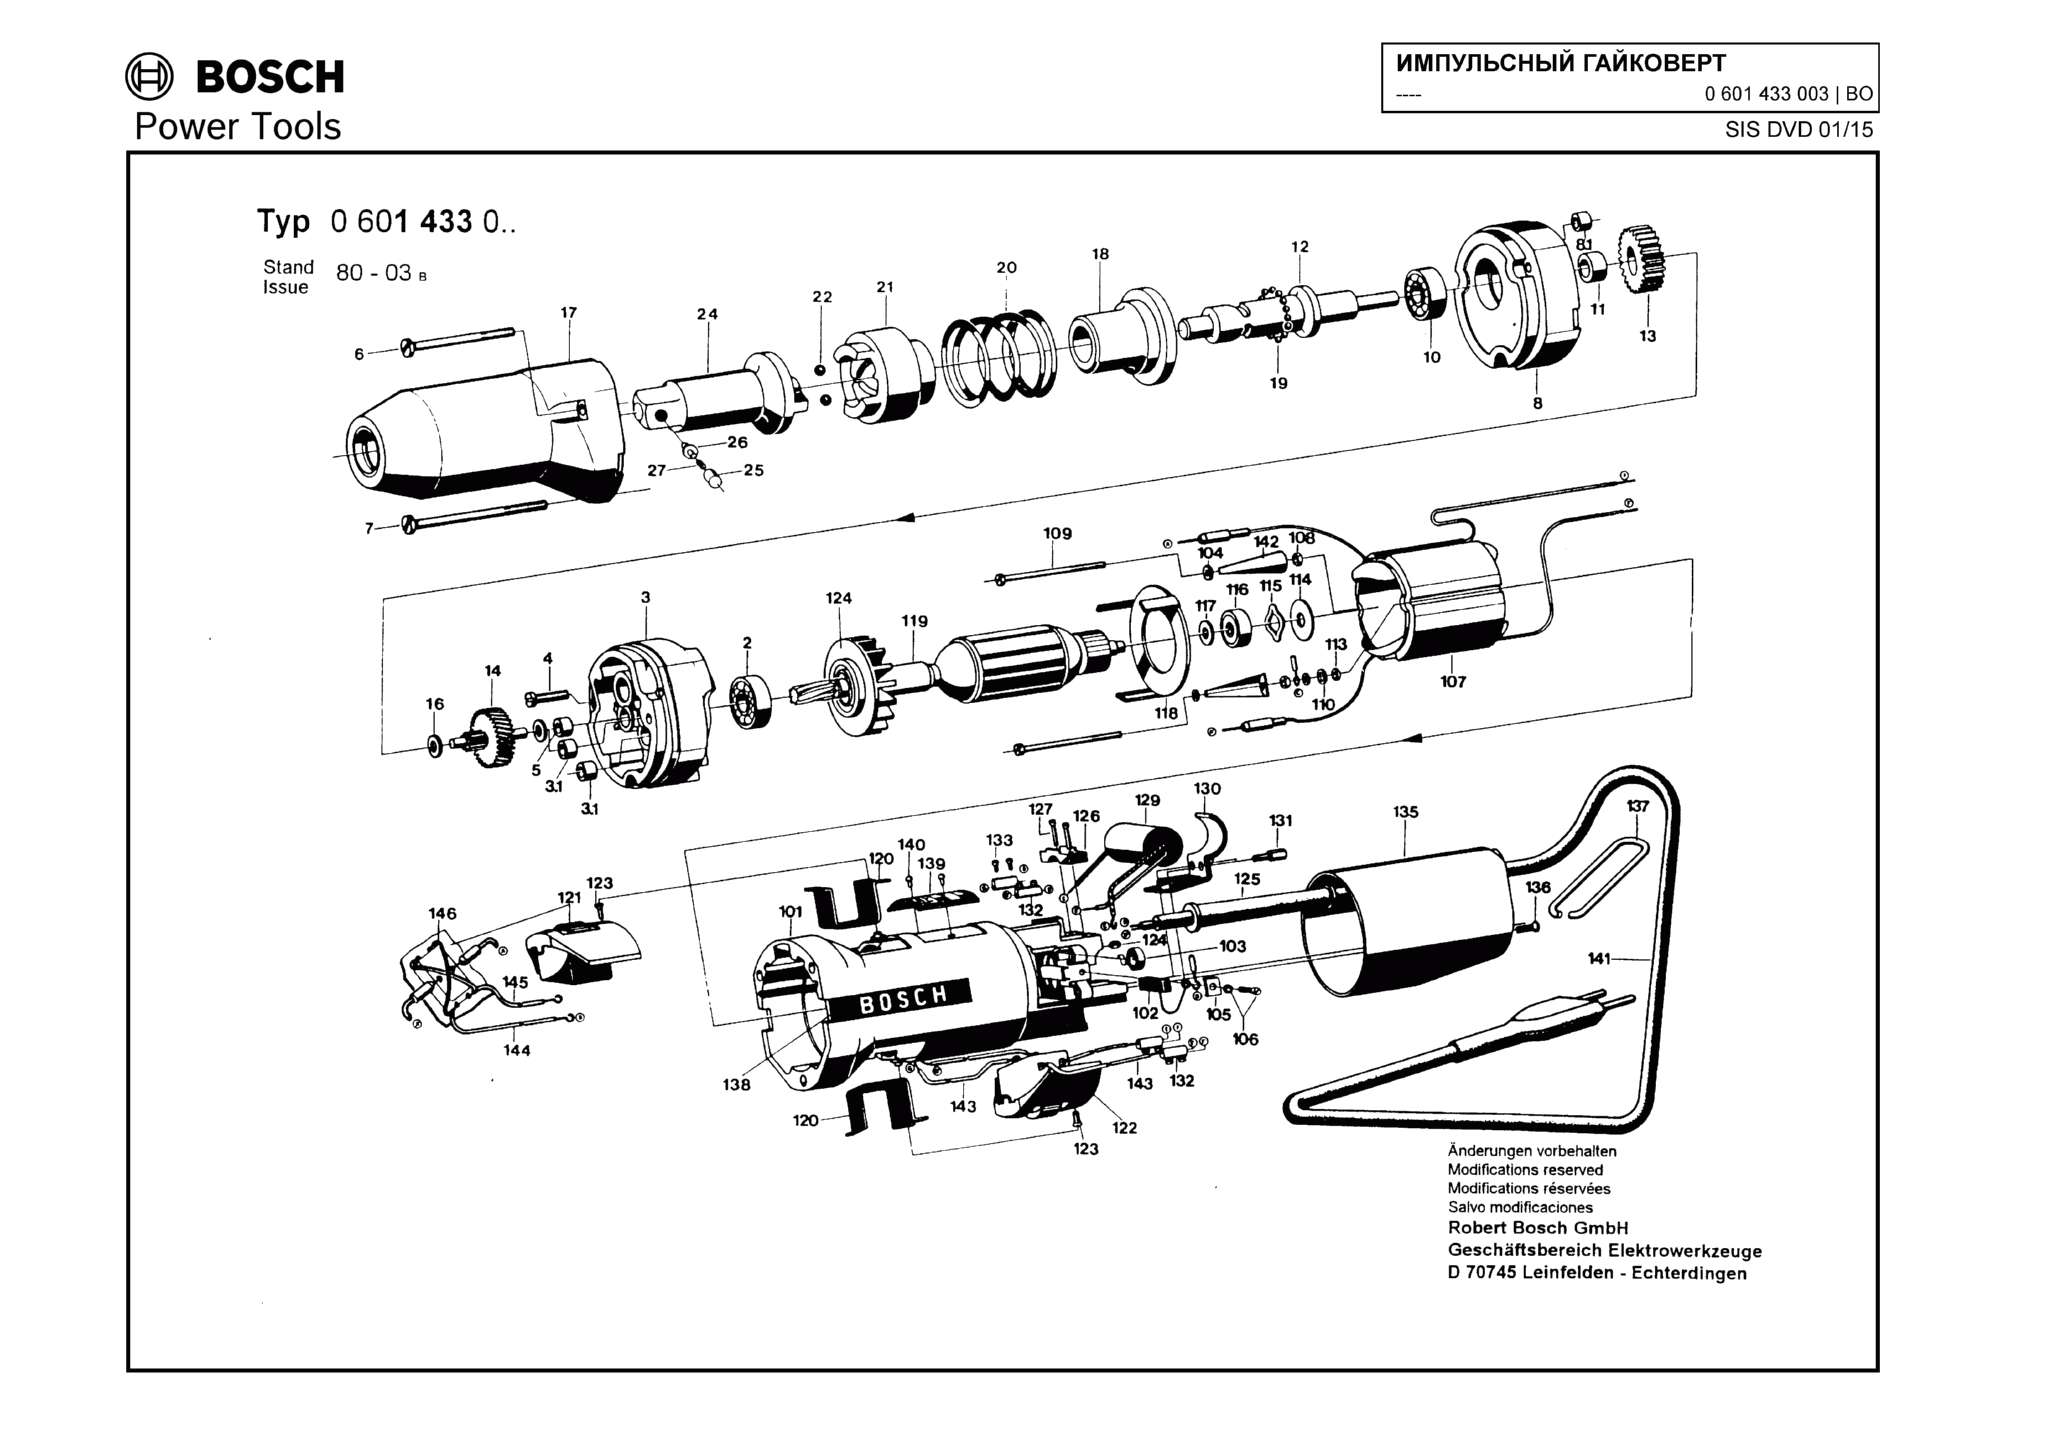 Запчасти, схема и деталировка Bosch (ТИП 0601433003)